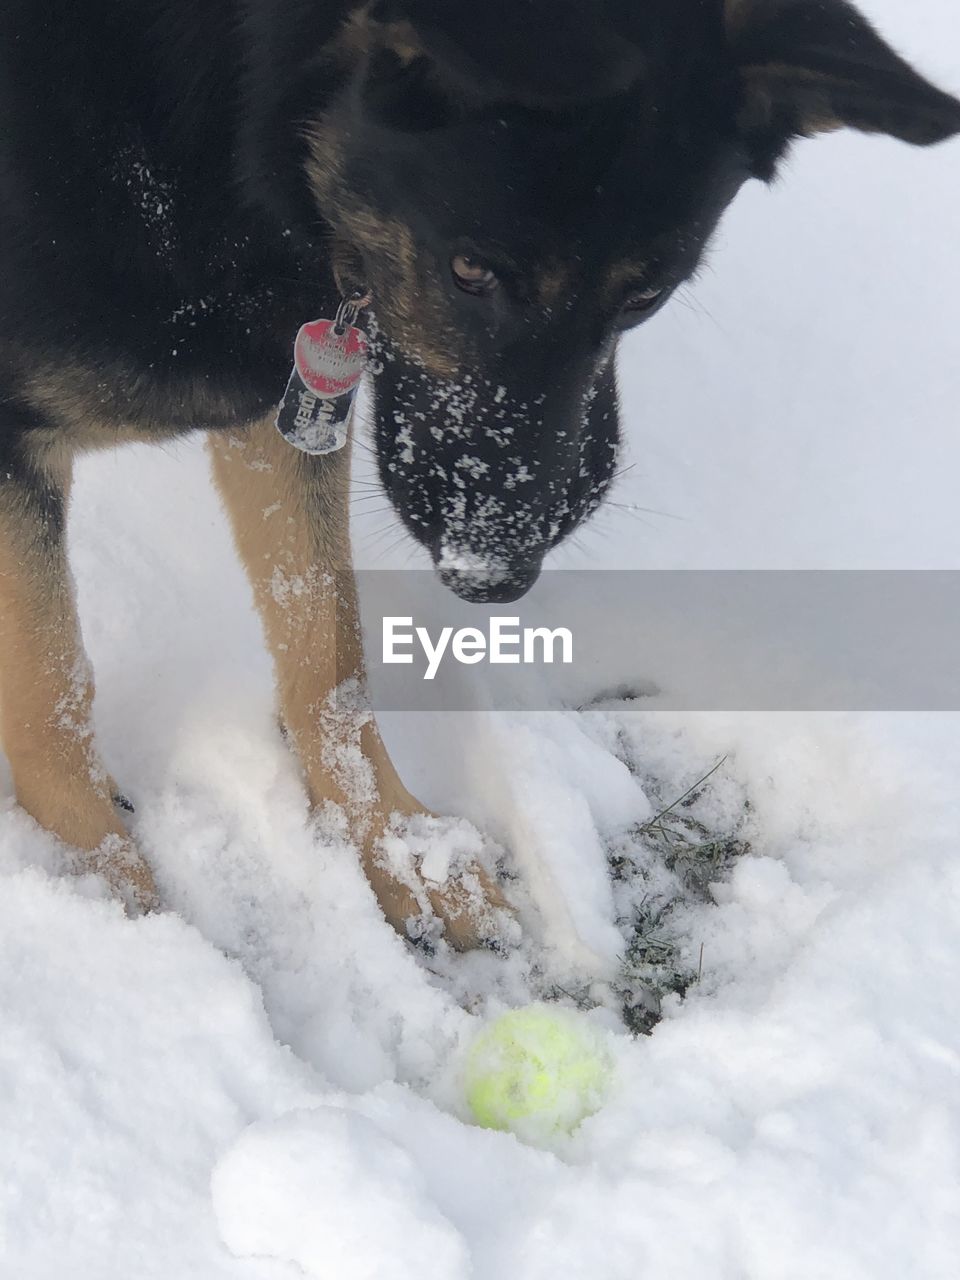 DOG IN SNOW